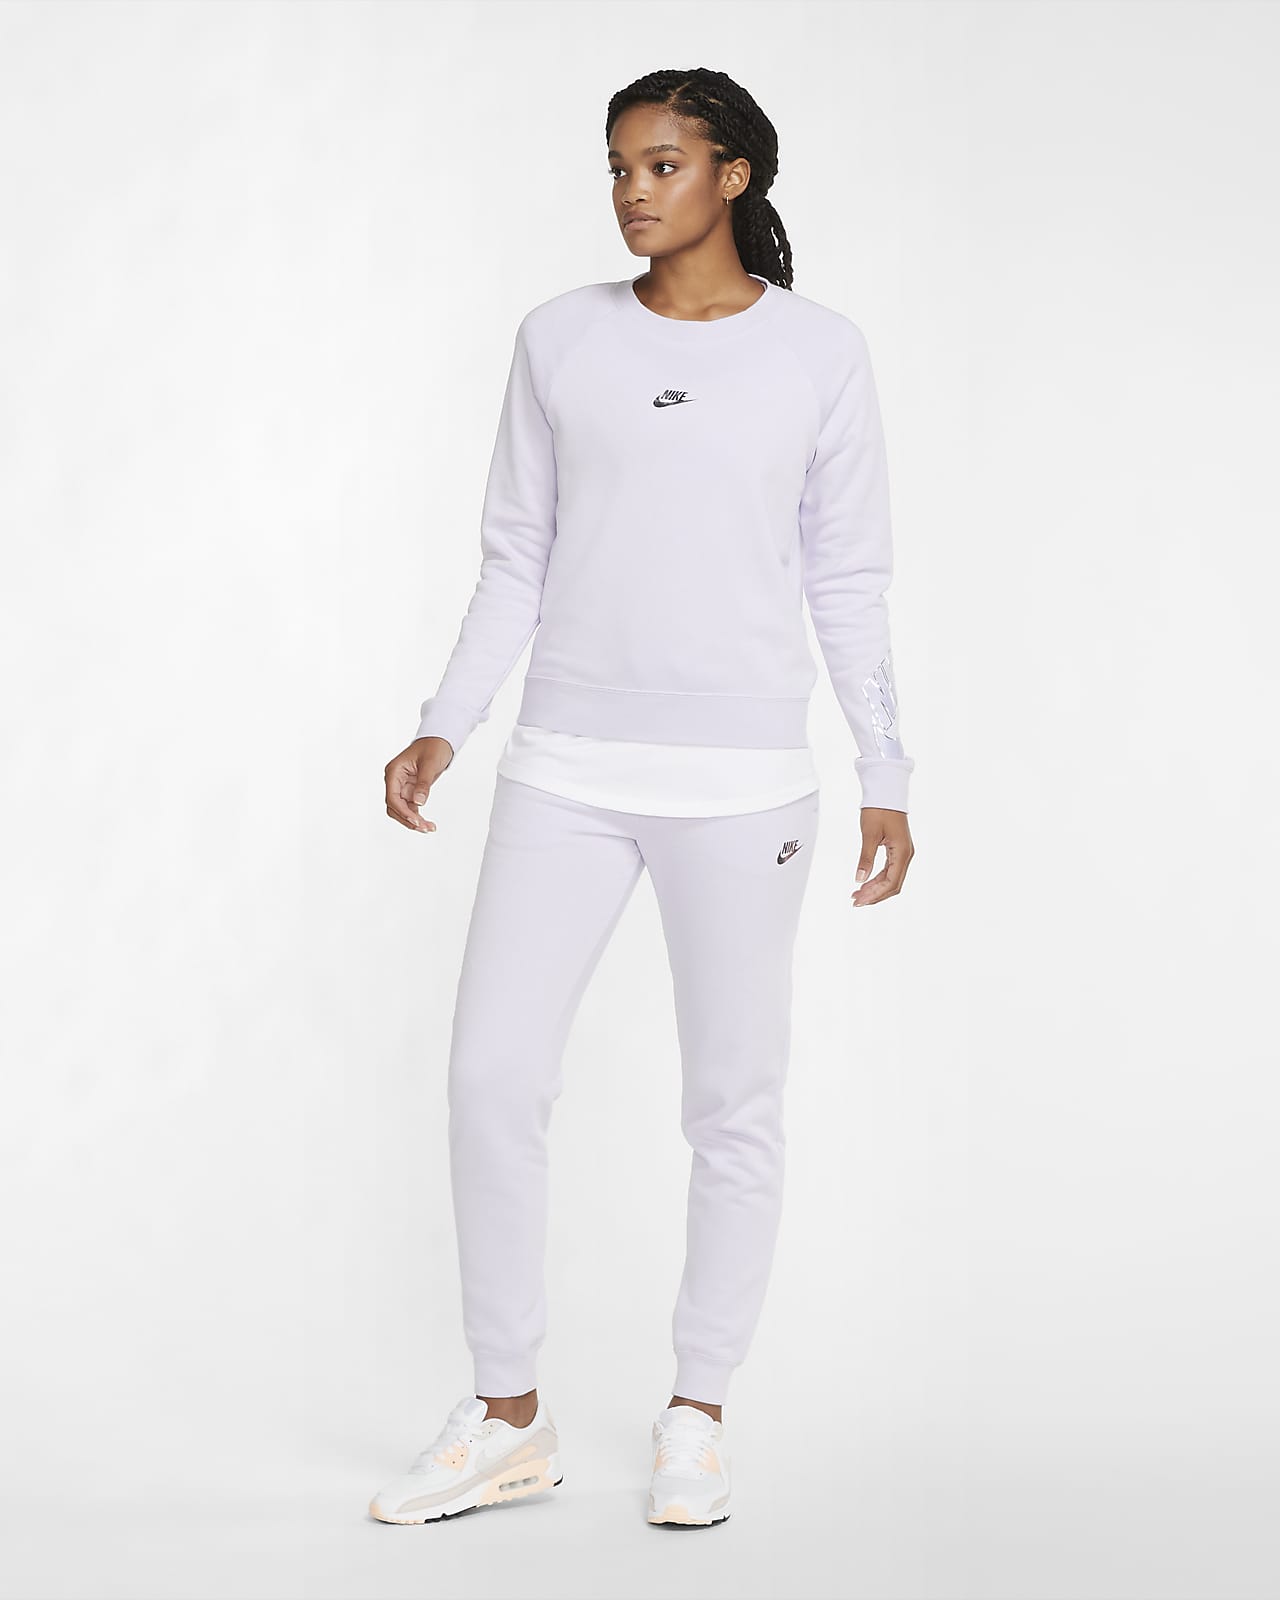 Nike Sportswear Women's Fleece Crew 